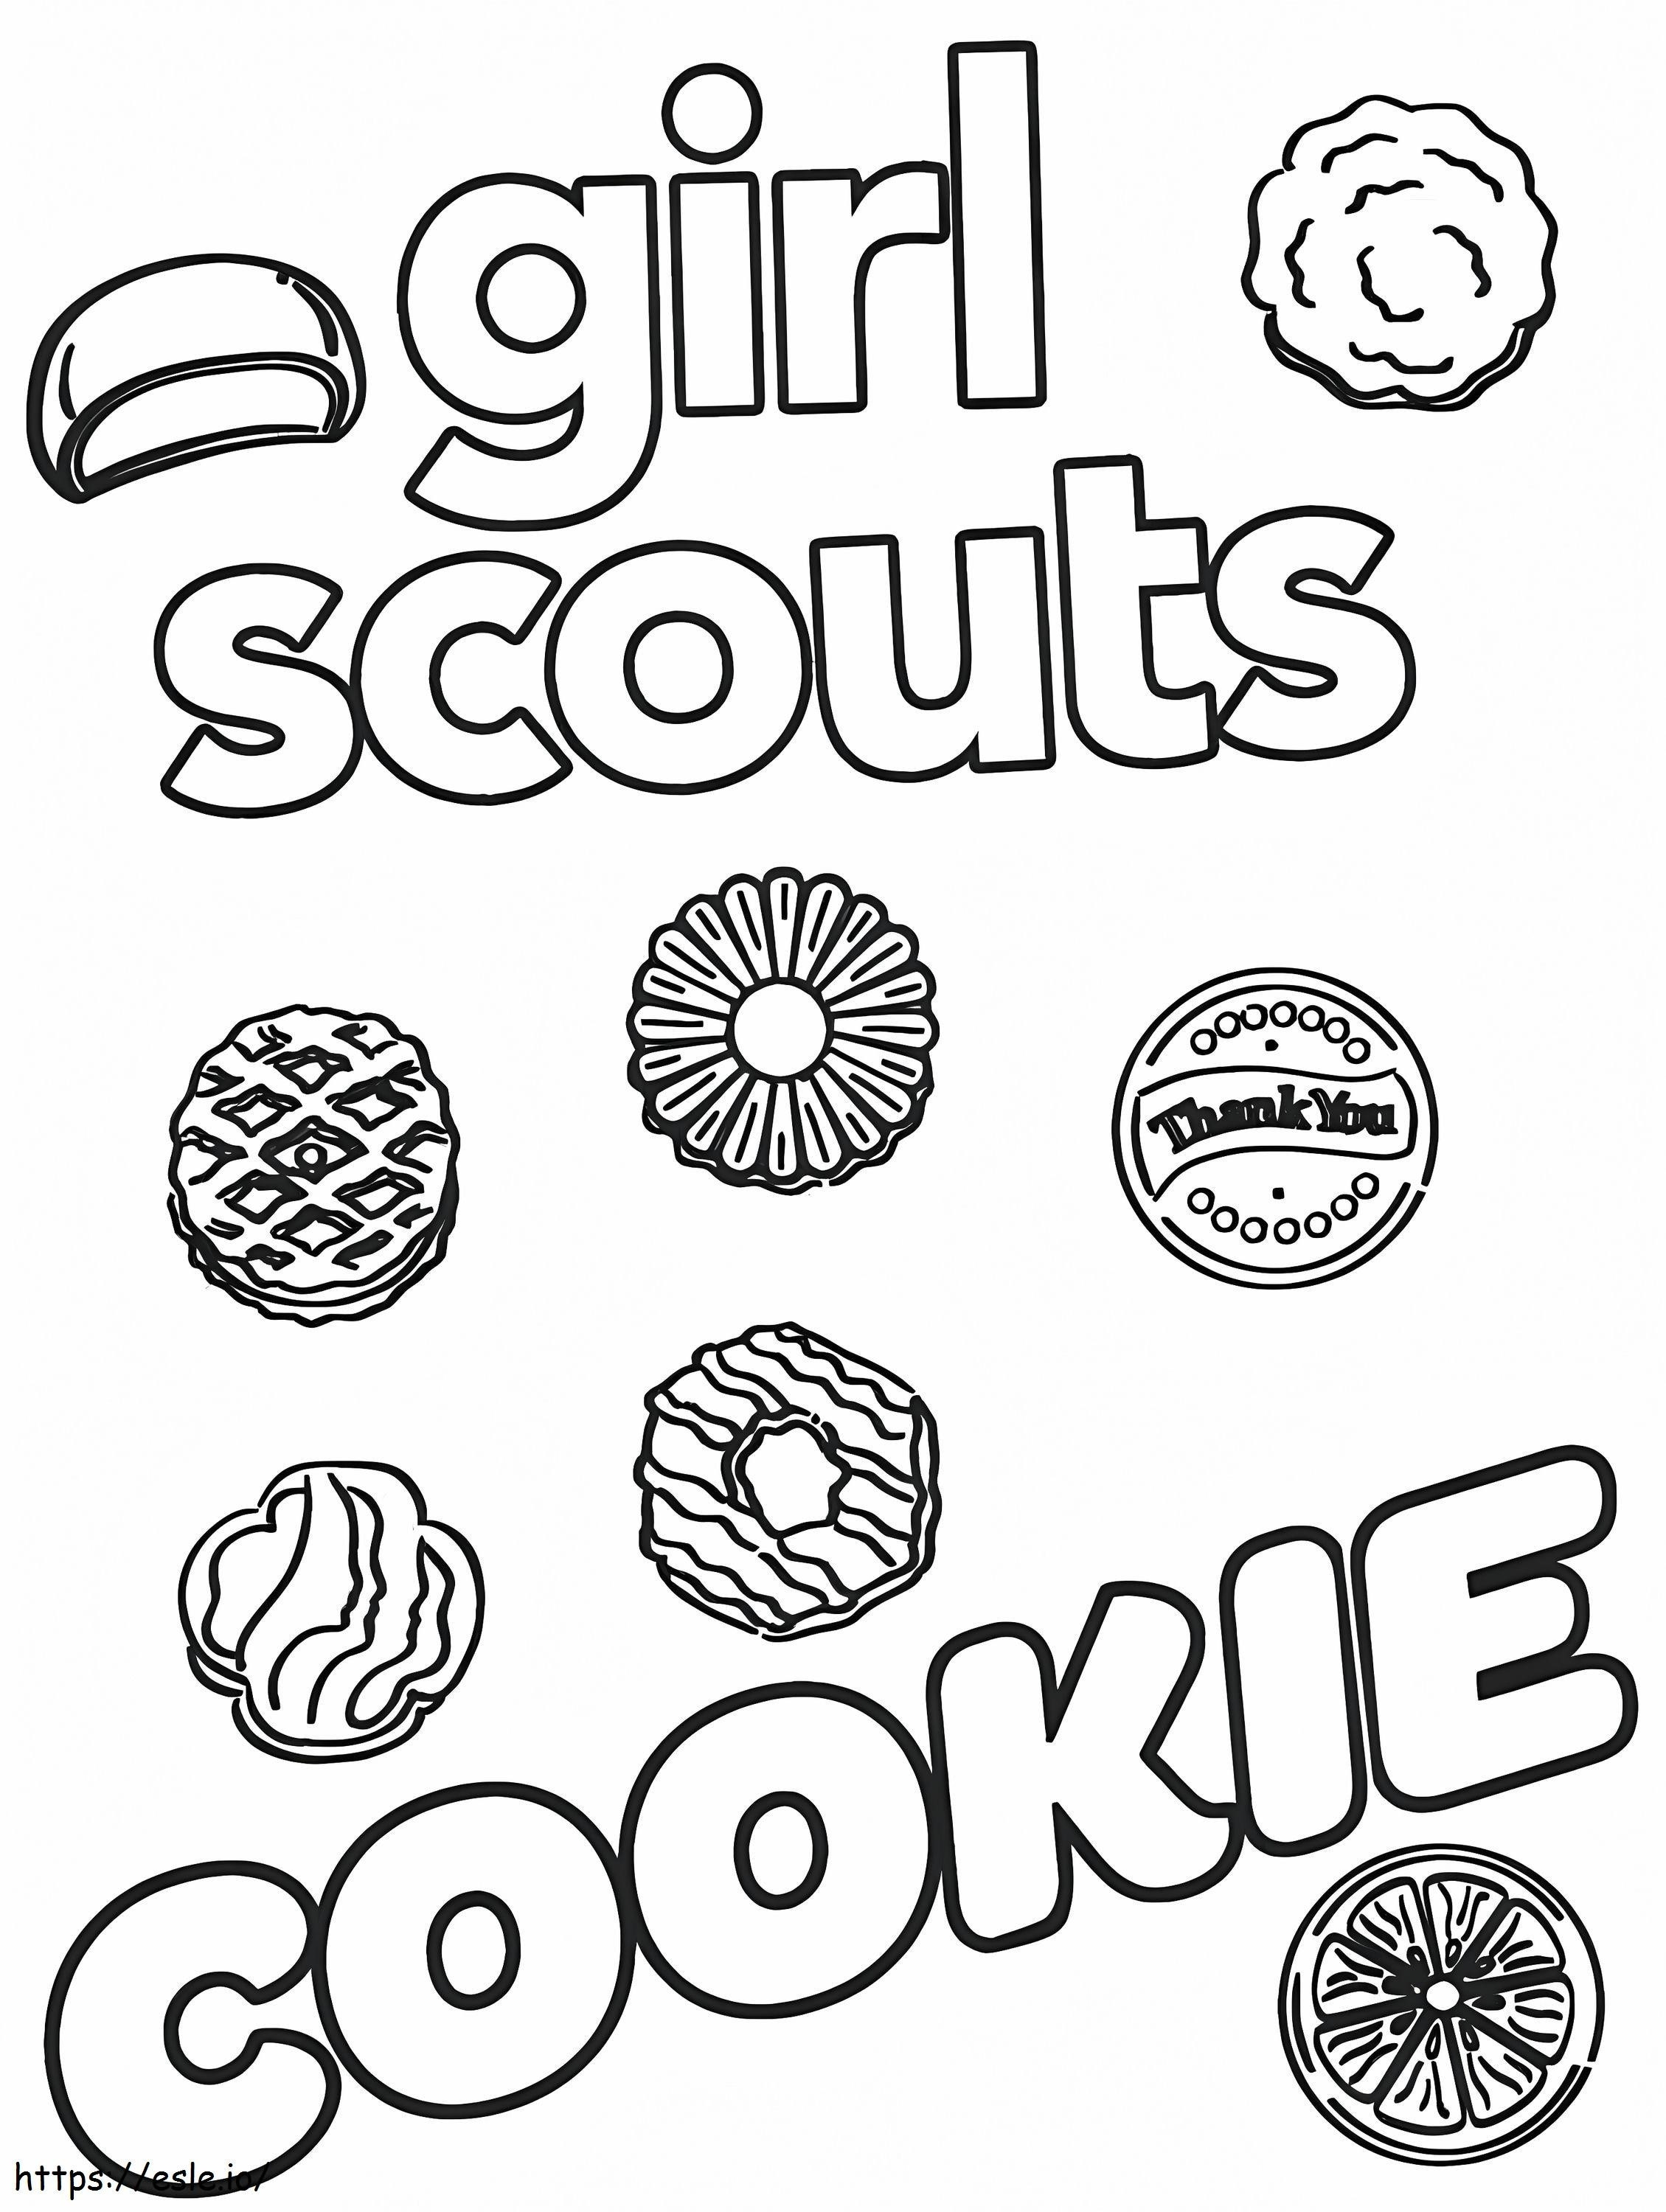 Girl Scout-koekje kleurplaat kleurplaat